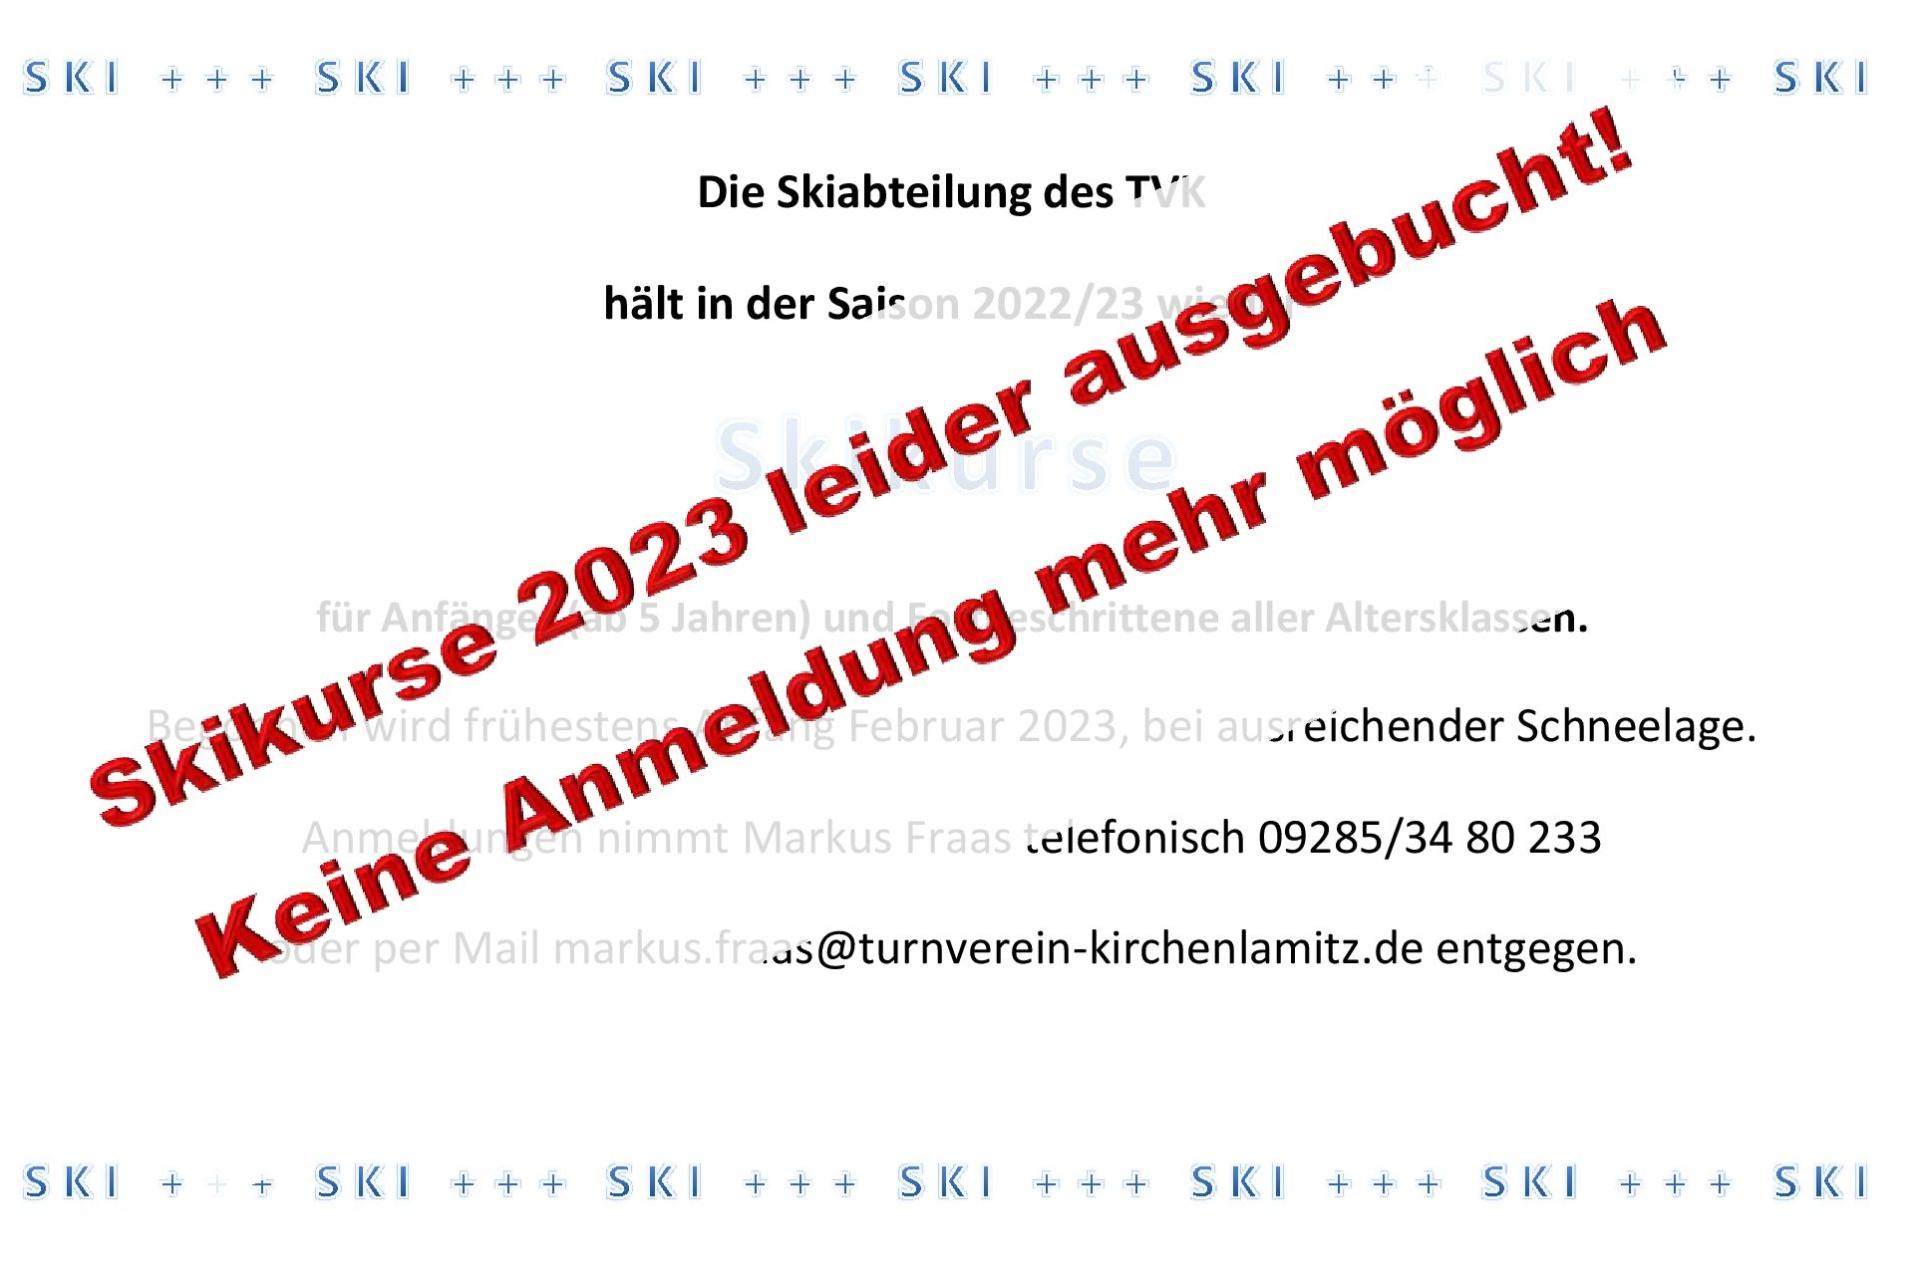 TVK Skiurse 2023_ausgebucht